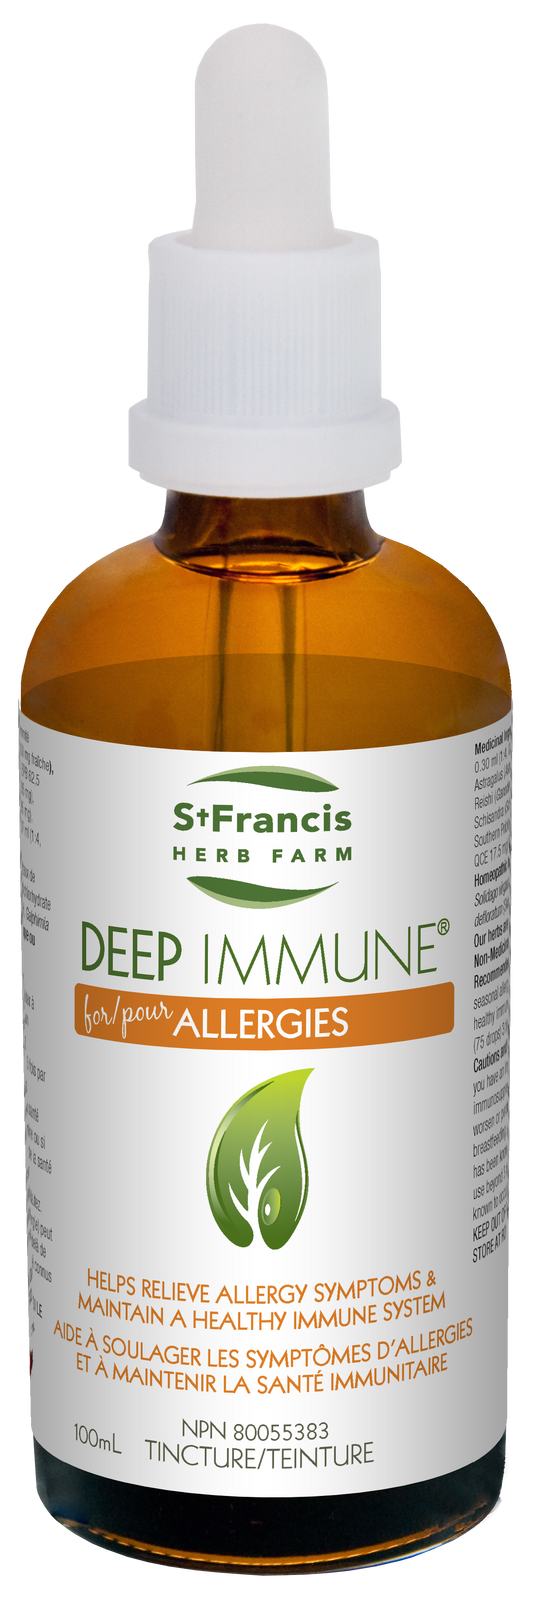 Deep Immune Allergies 50ml